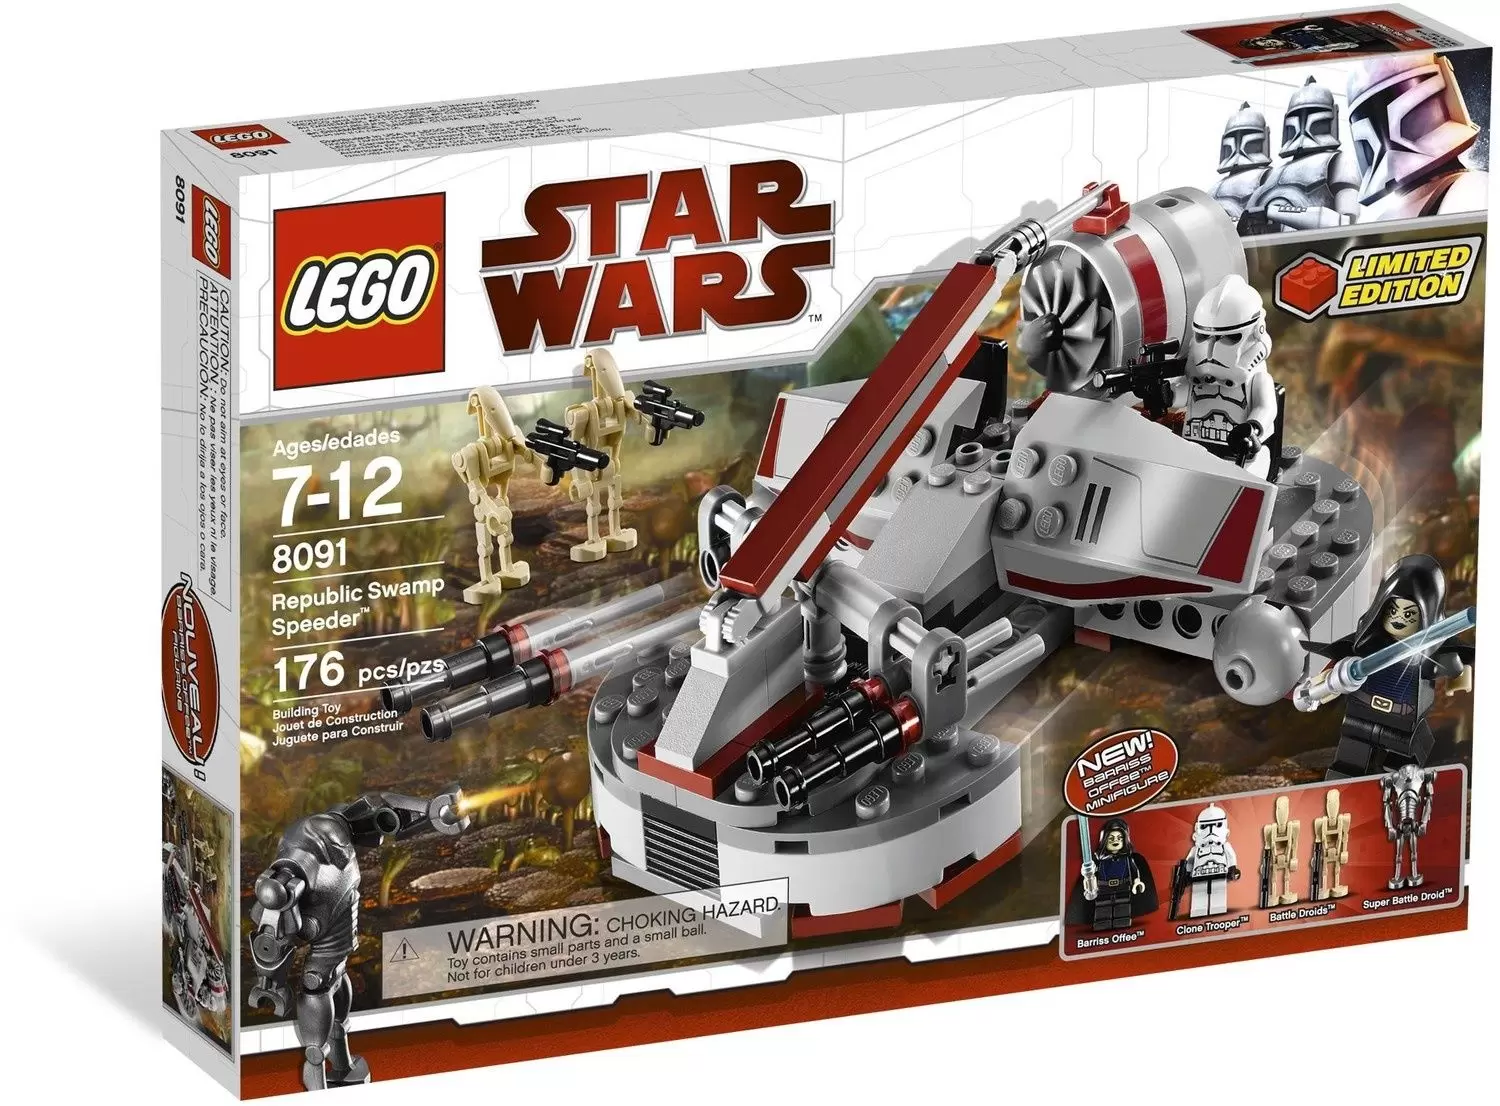 LEGO Star Wars - Republic Swamp Speeder